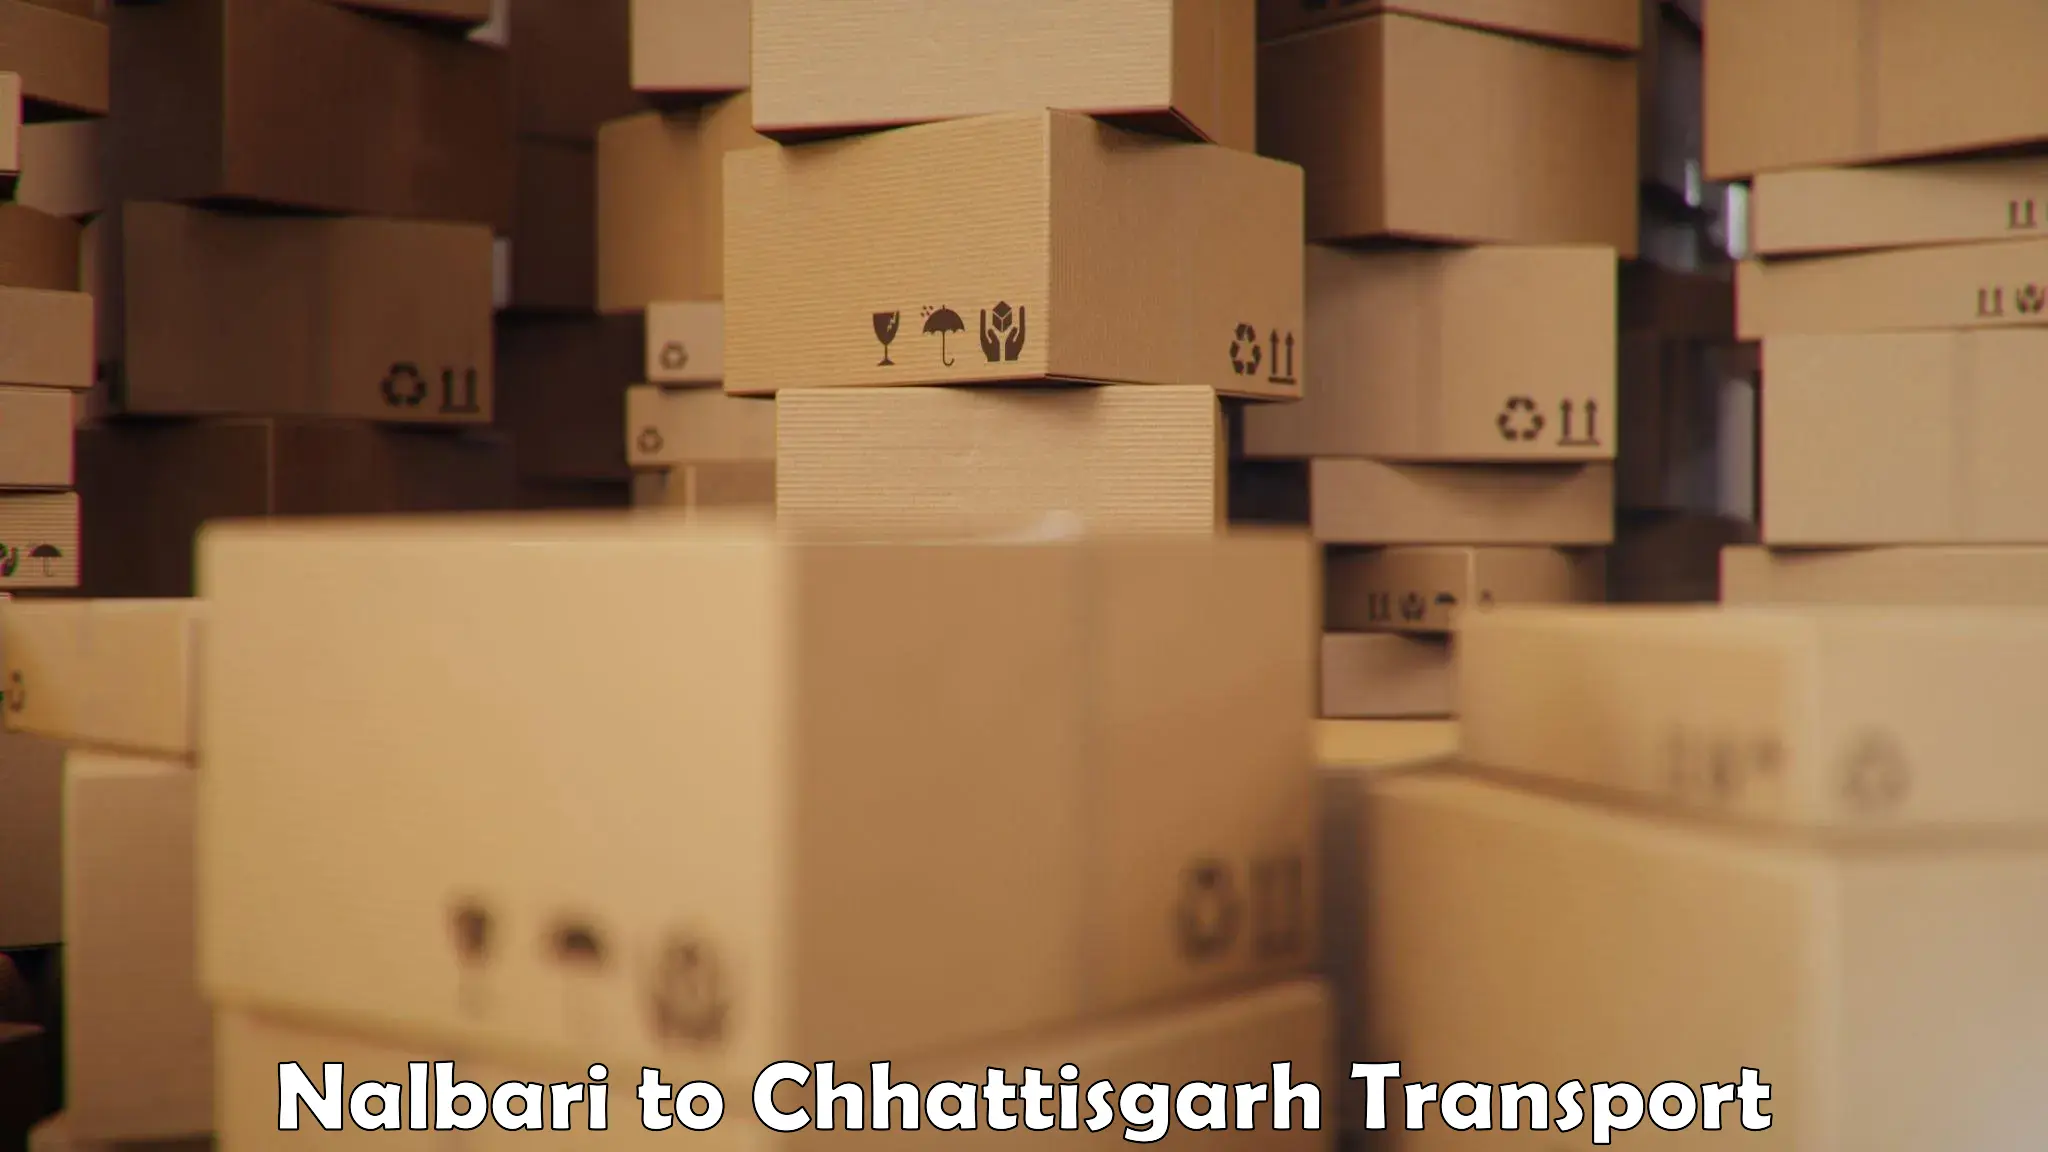 Furniture transport service Nalbari to Pakhanjur